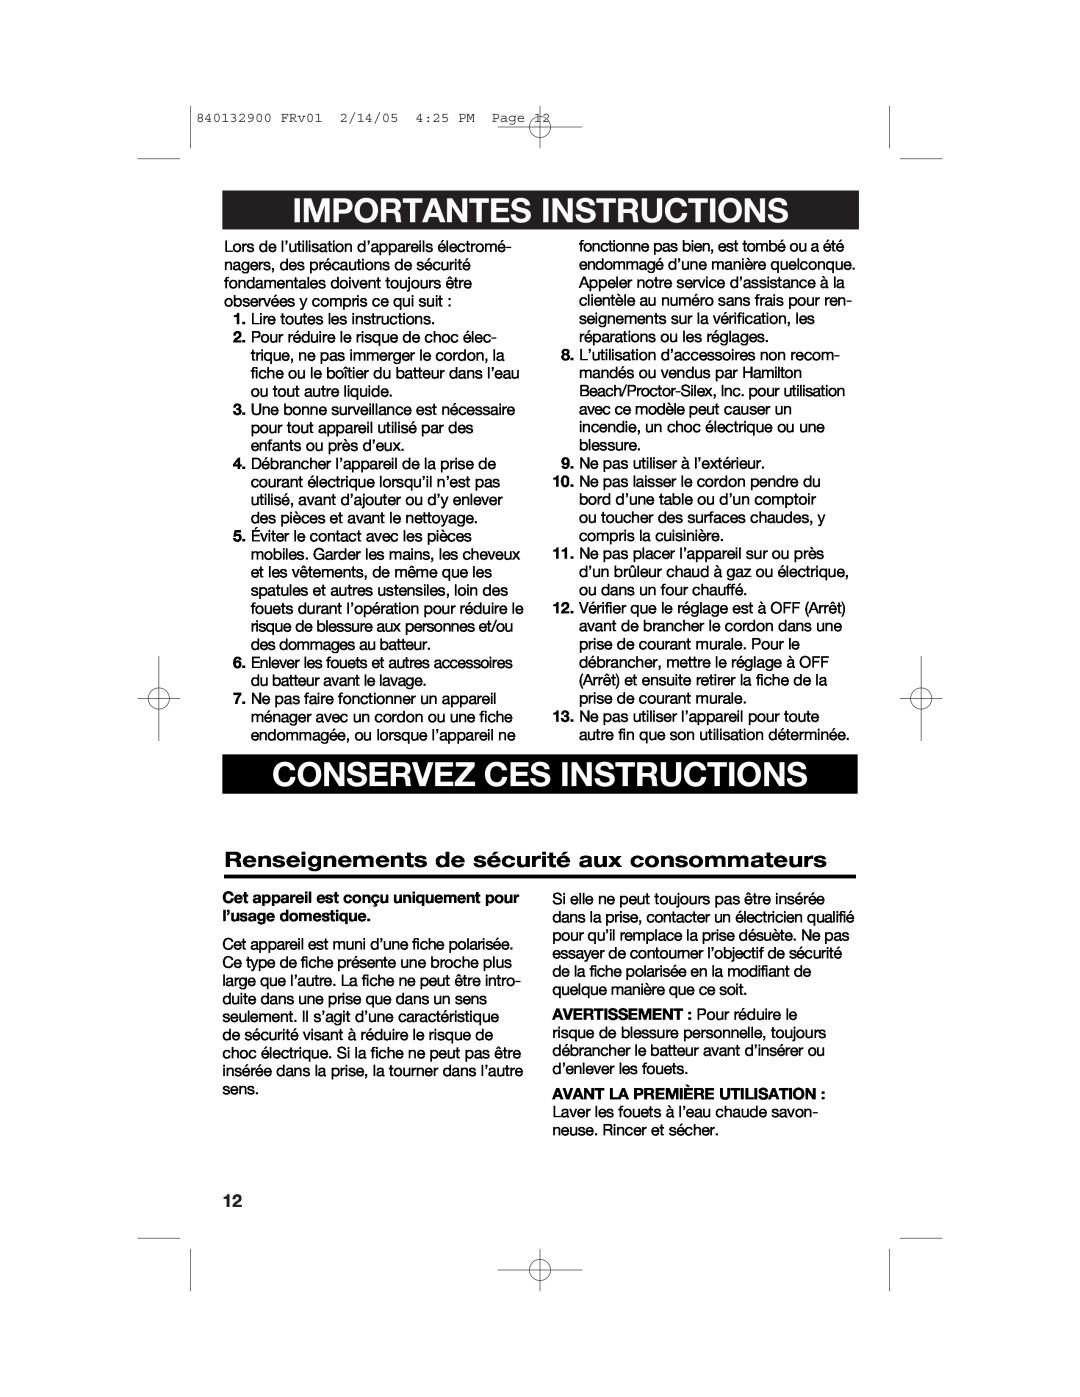 Hamilton Beach 840132900 manual Importantes Instructions, Conservez Ces Instructions 